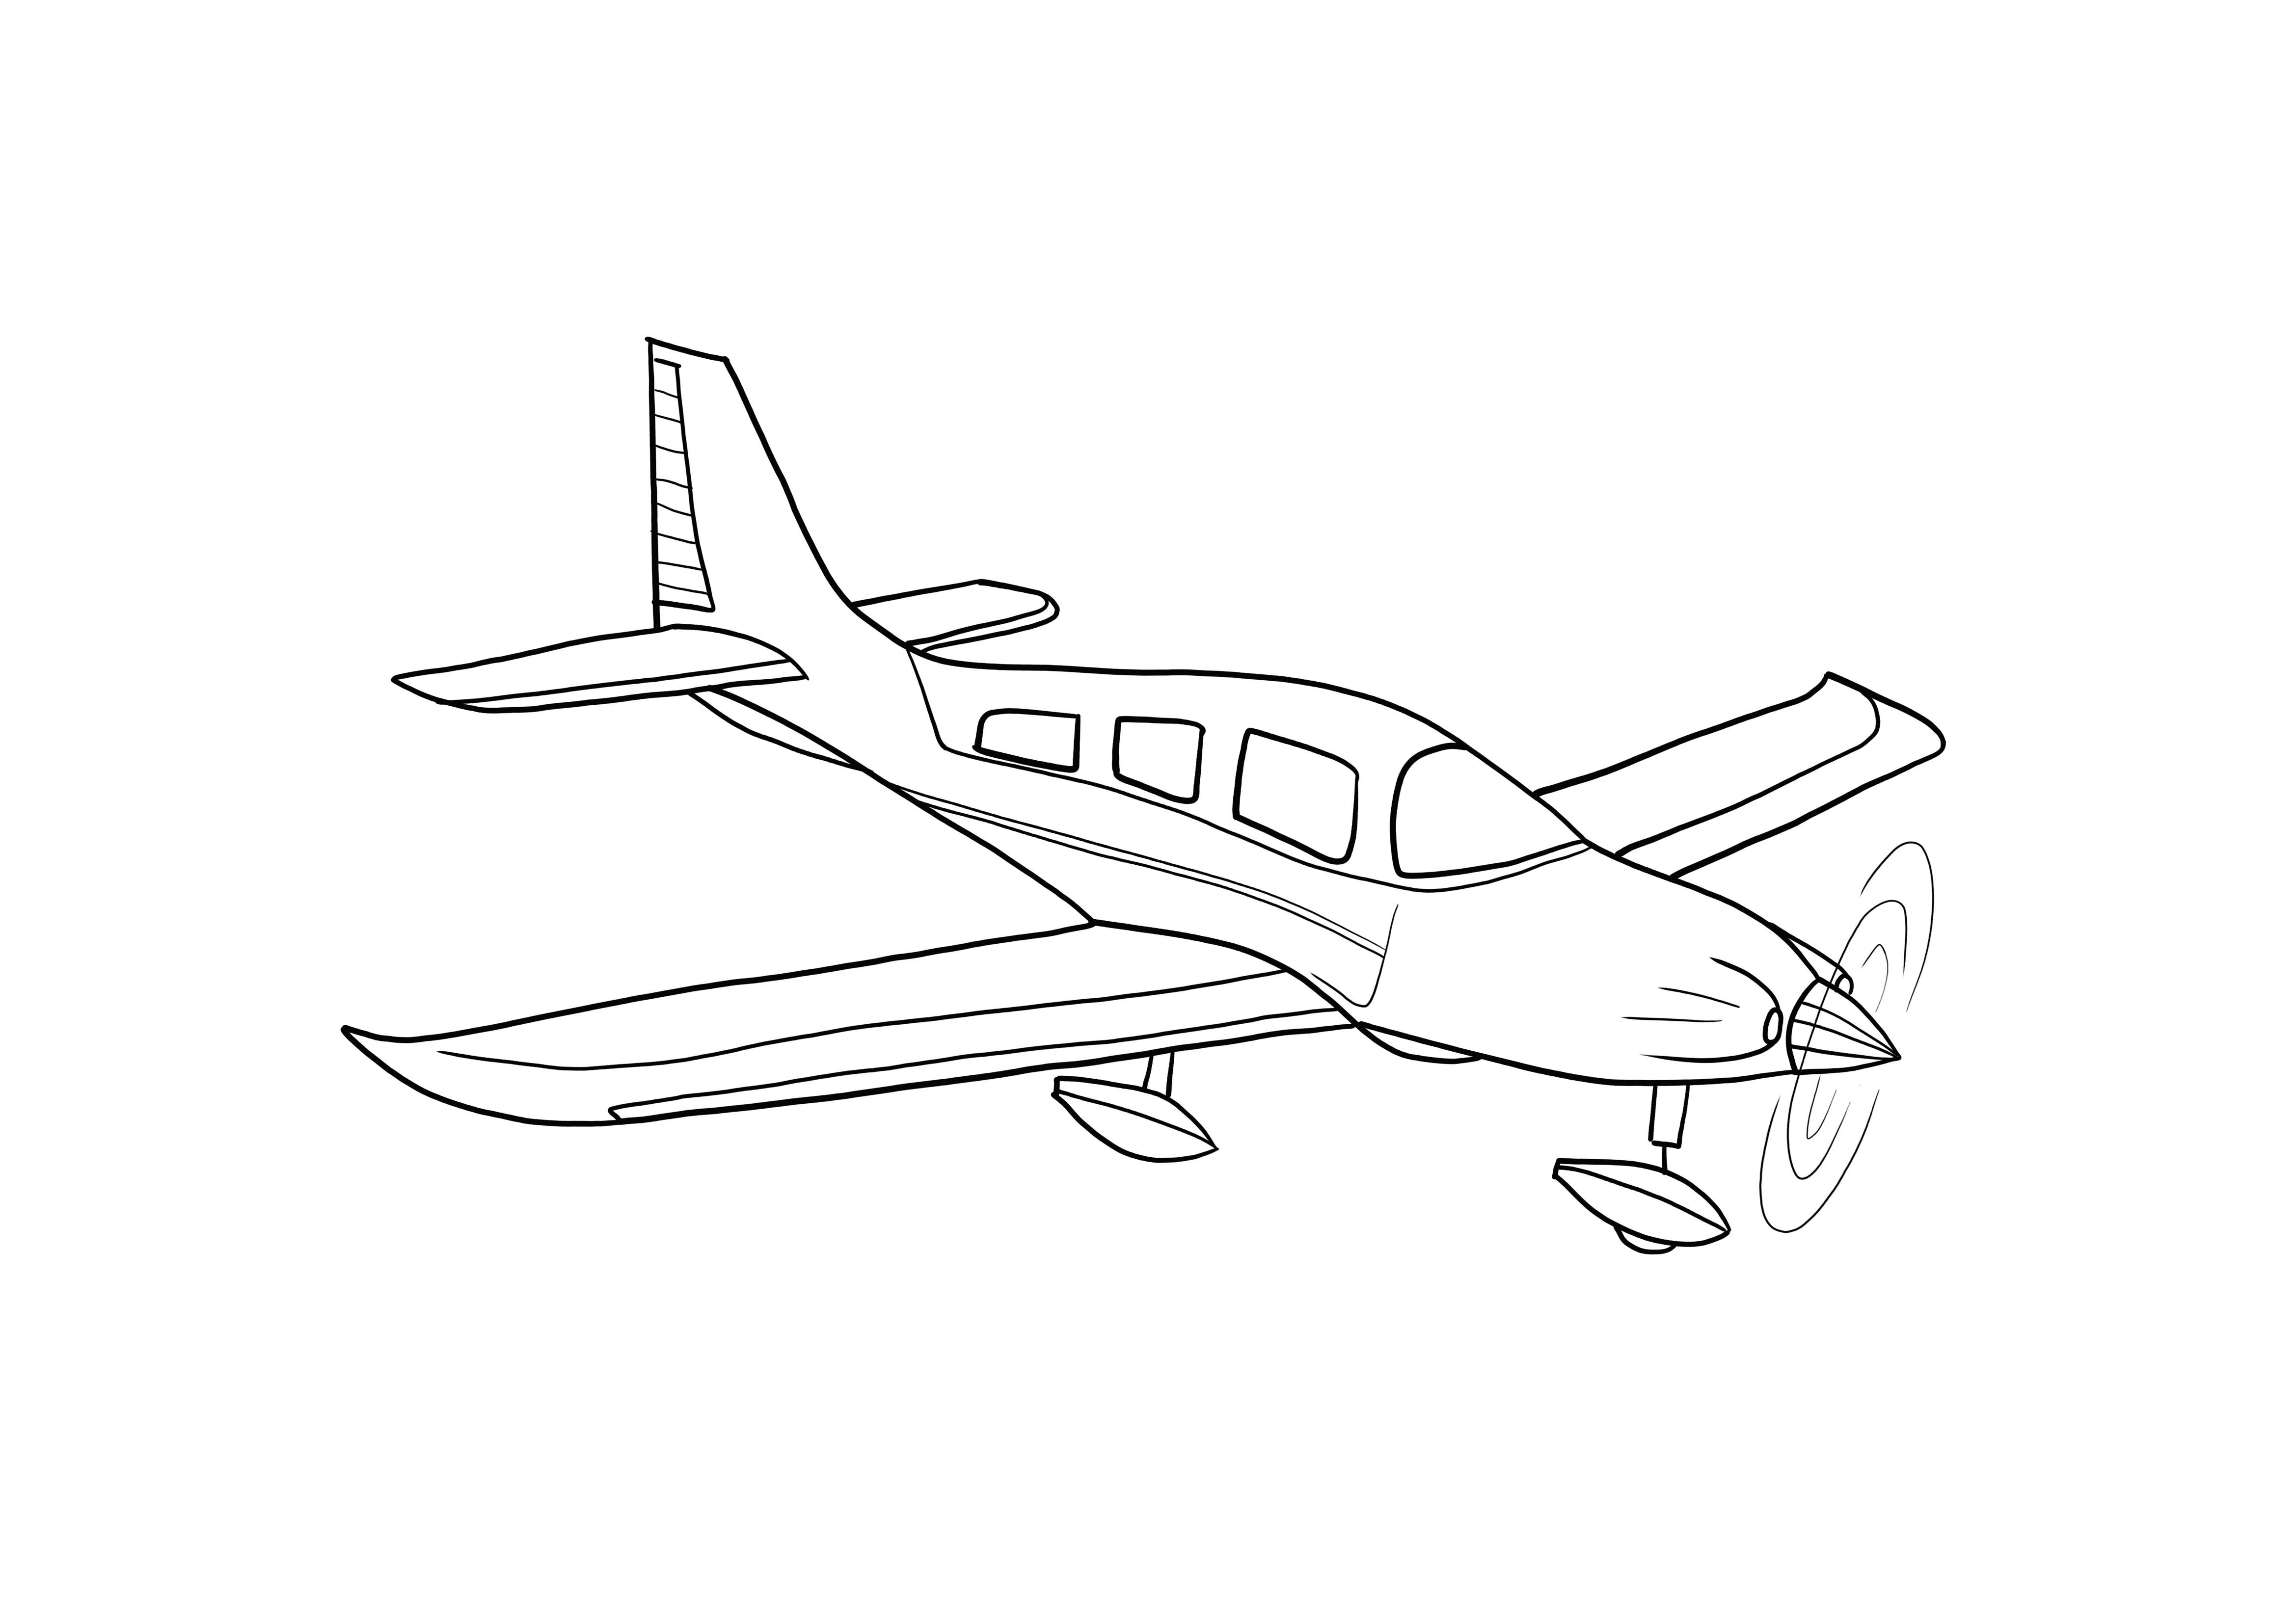 Dibujo de avión super fácil para colorear gratis.